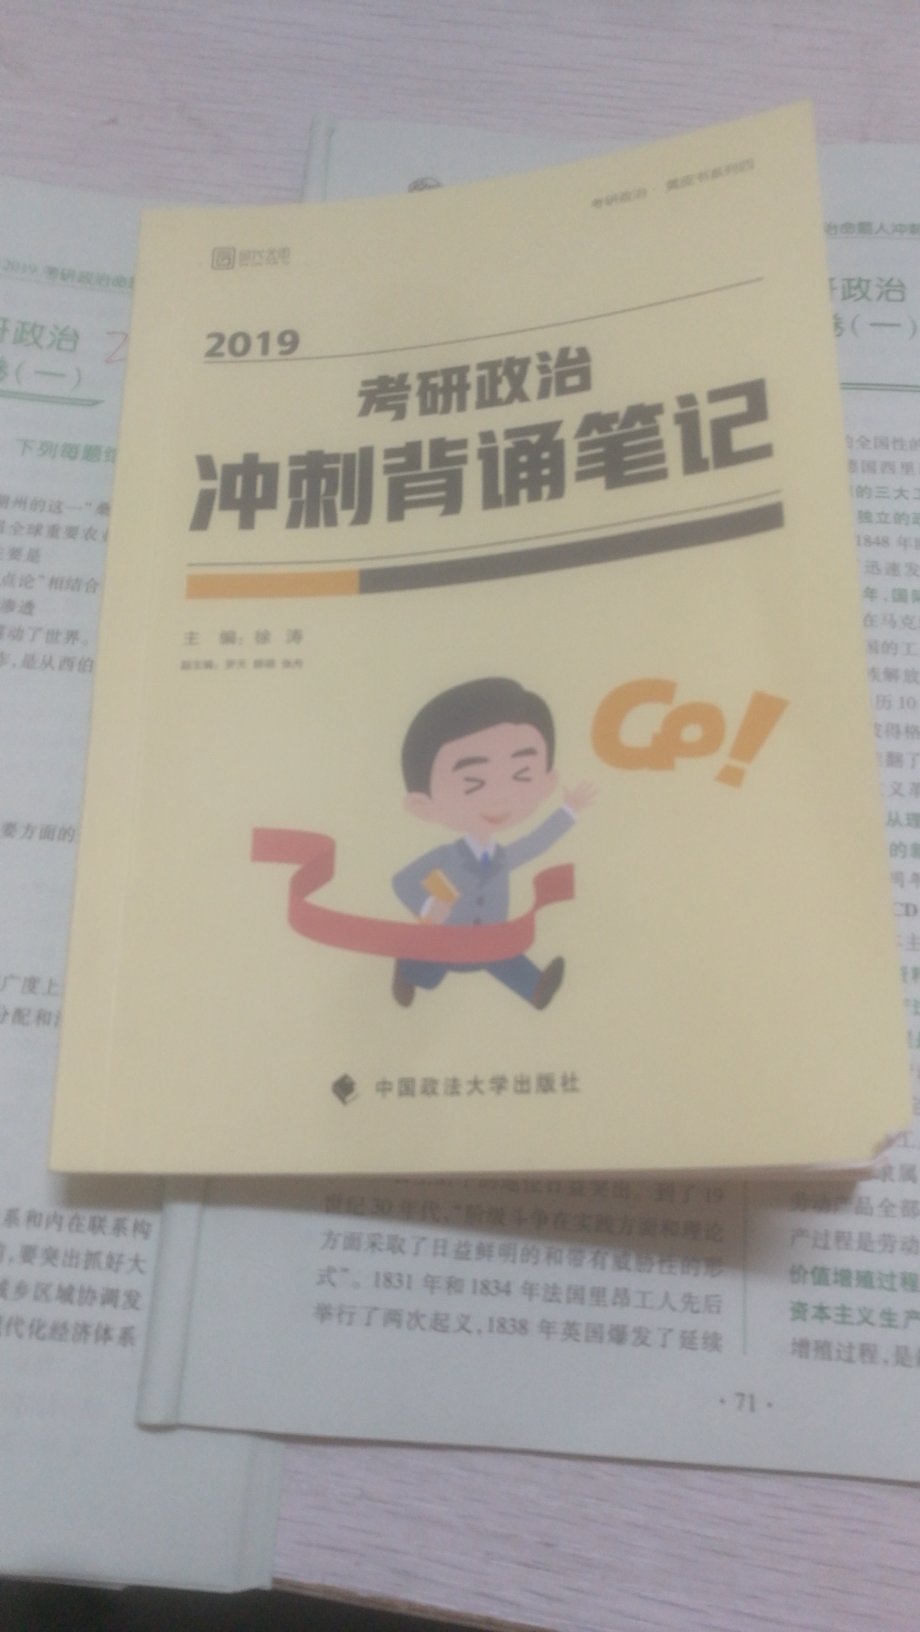 很棒的一本书，使用十分方便，很棒。不过我不希望每年再买它。哈哈哈哈哈哈哈(?ω?)hiahiahia